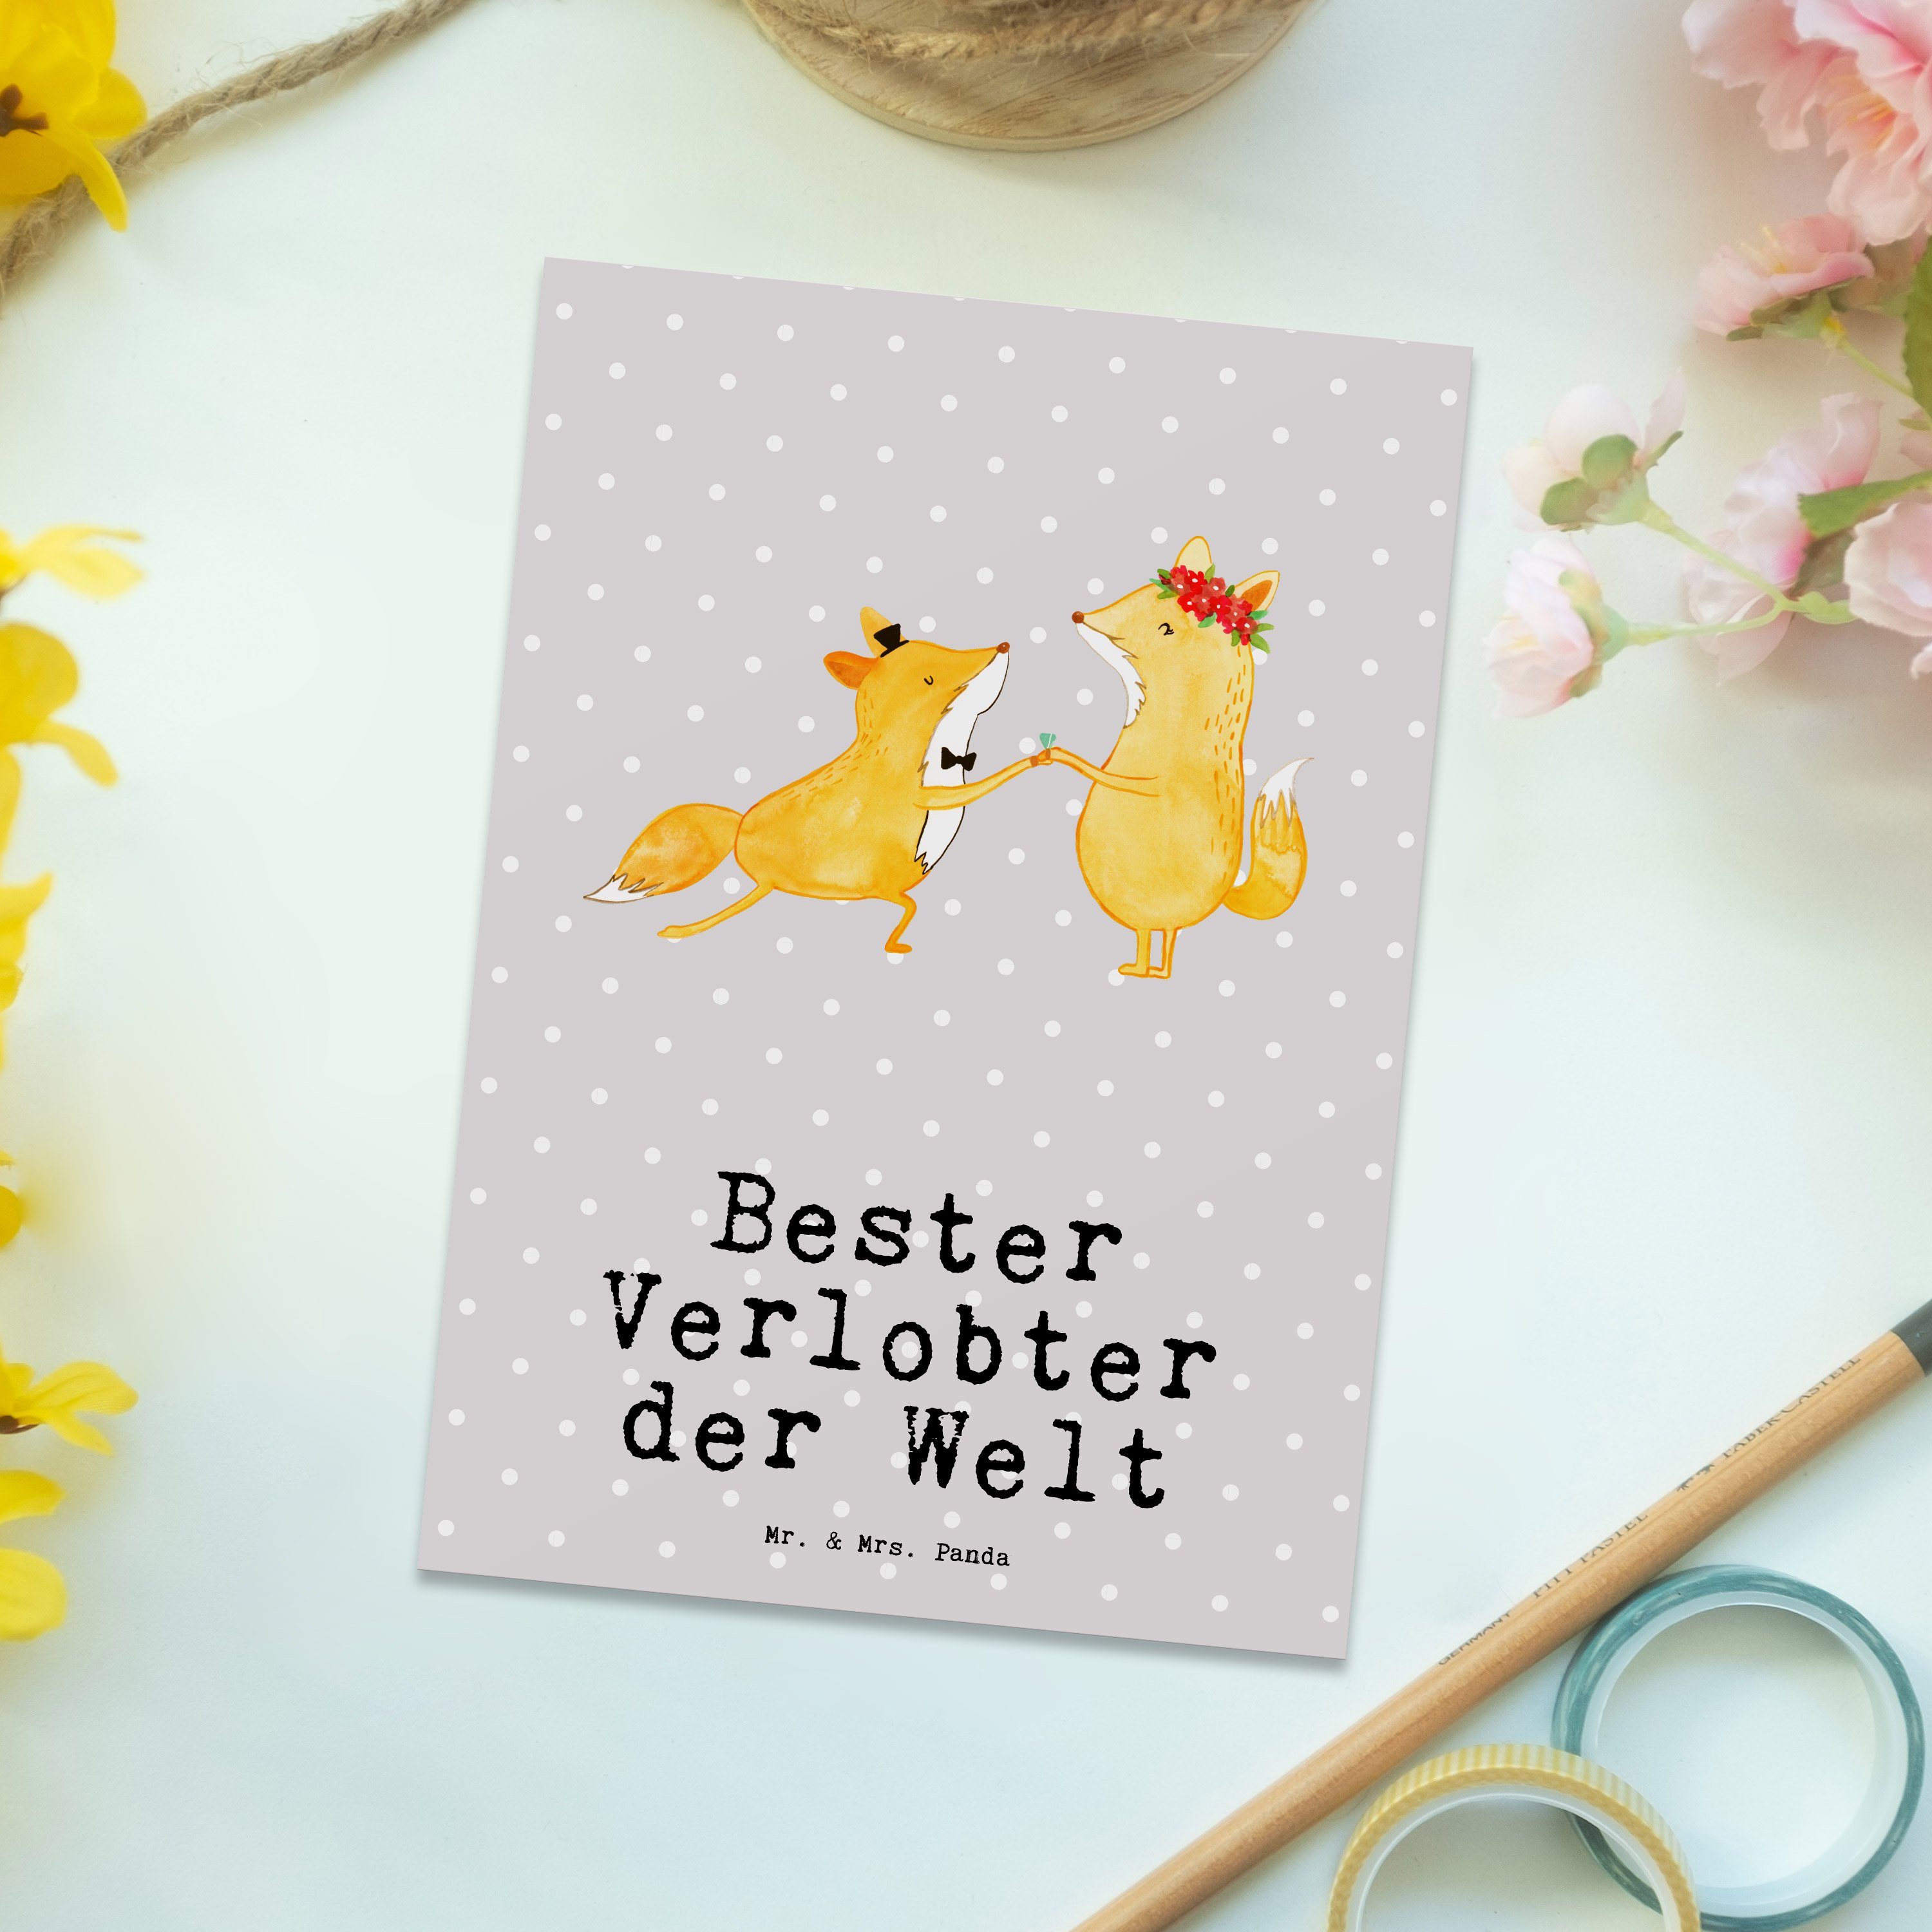 & Postkarte Dankeskart Panda Verlobter Mrs. Bester Grau Pastell - Fuchs Geschenk, - der Welt Mr.